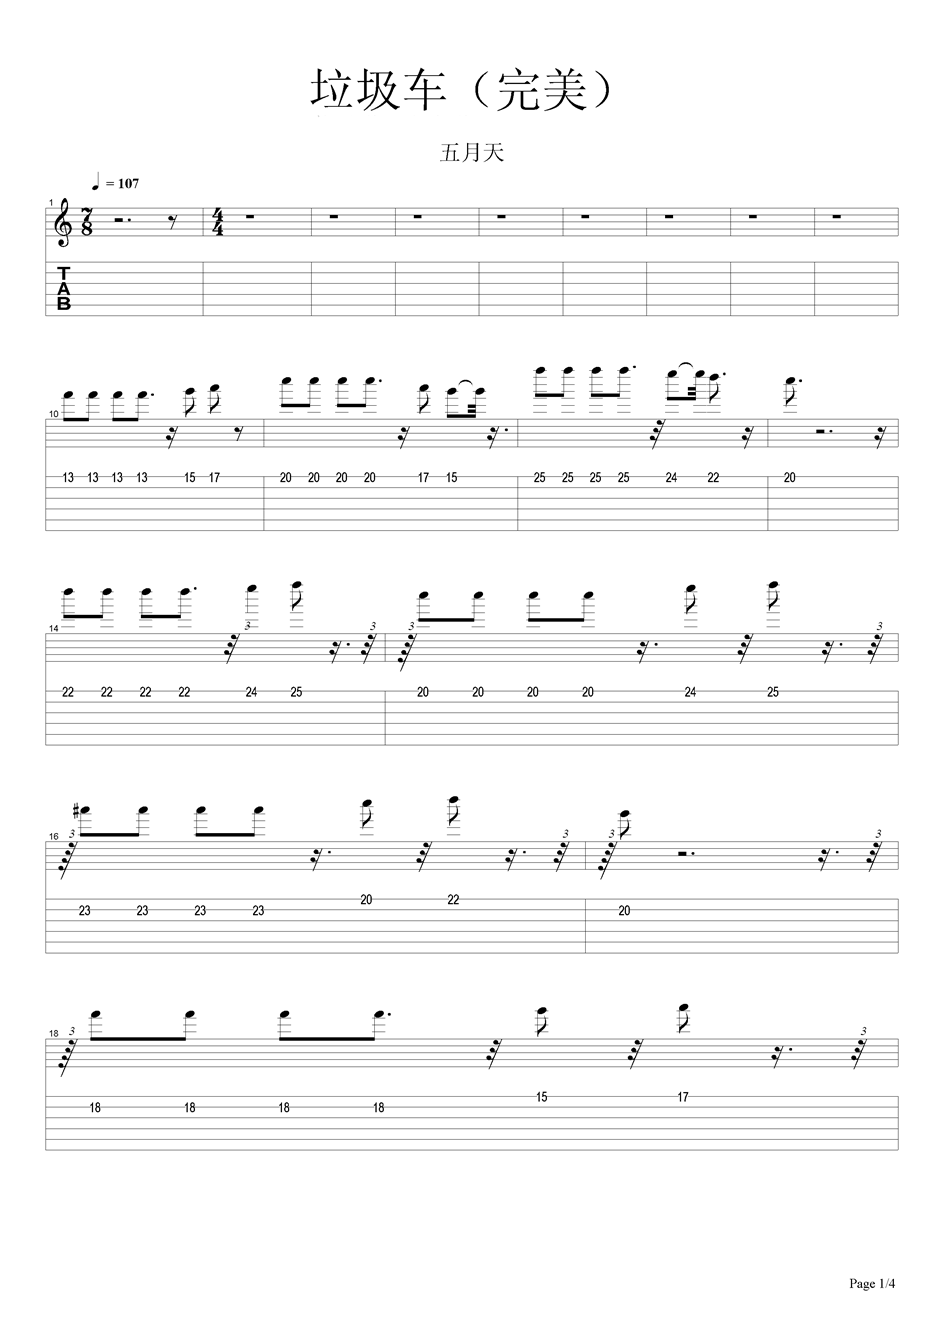 垃圾车吉他谱-五月天六线谱原版-完美高清简单图片谱